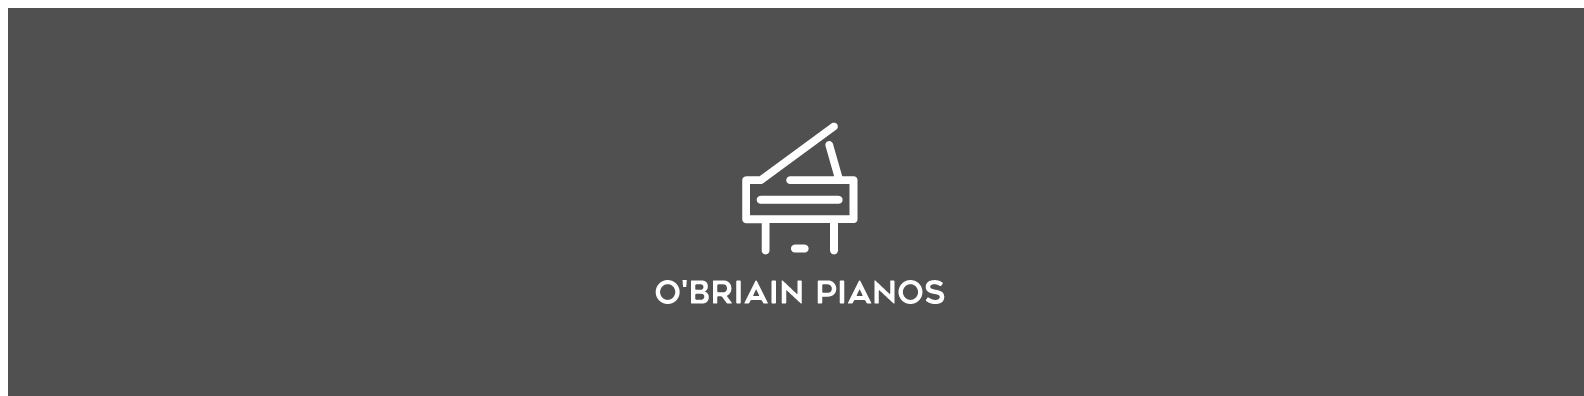 Danemann-O'Briain Pianos